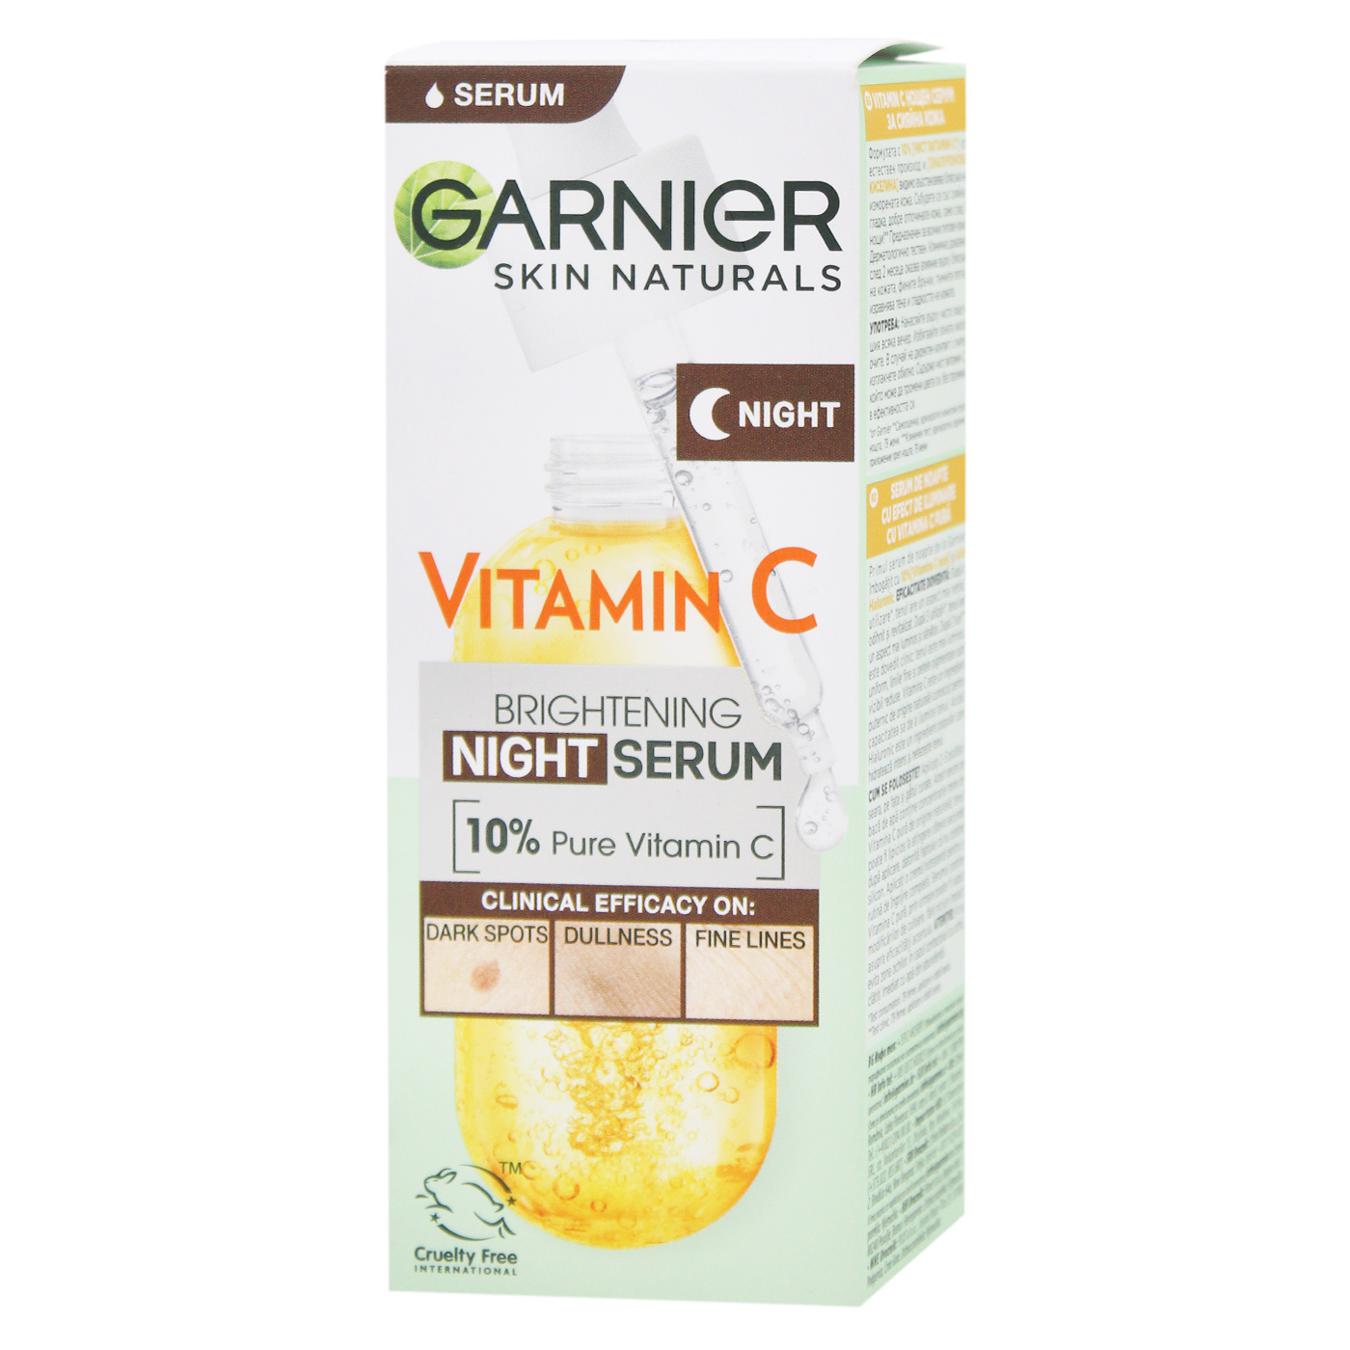 Сыворотка для лица Garnier 3 skin naturals с витамином С ночная для уменьшения видимости пигментных пятен